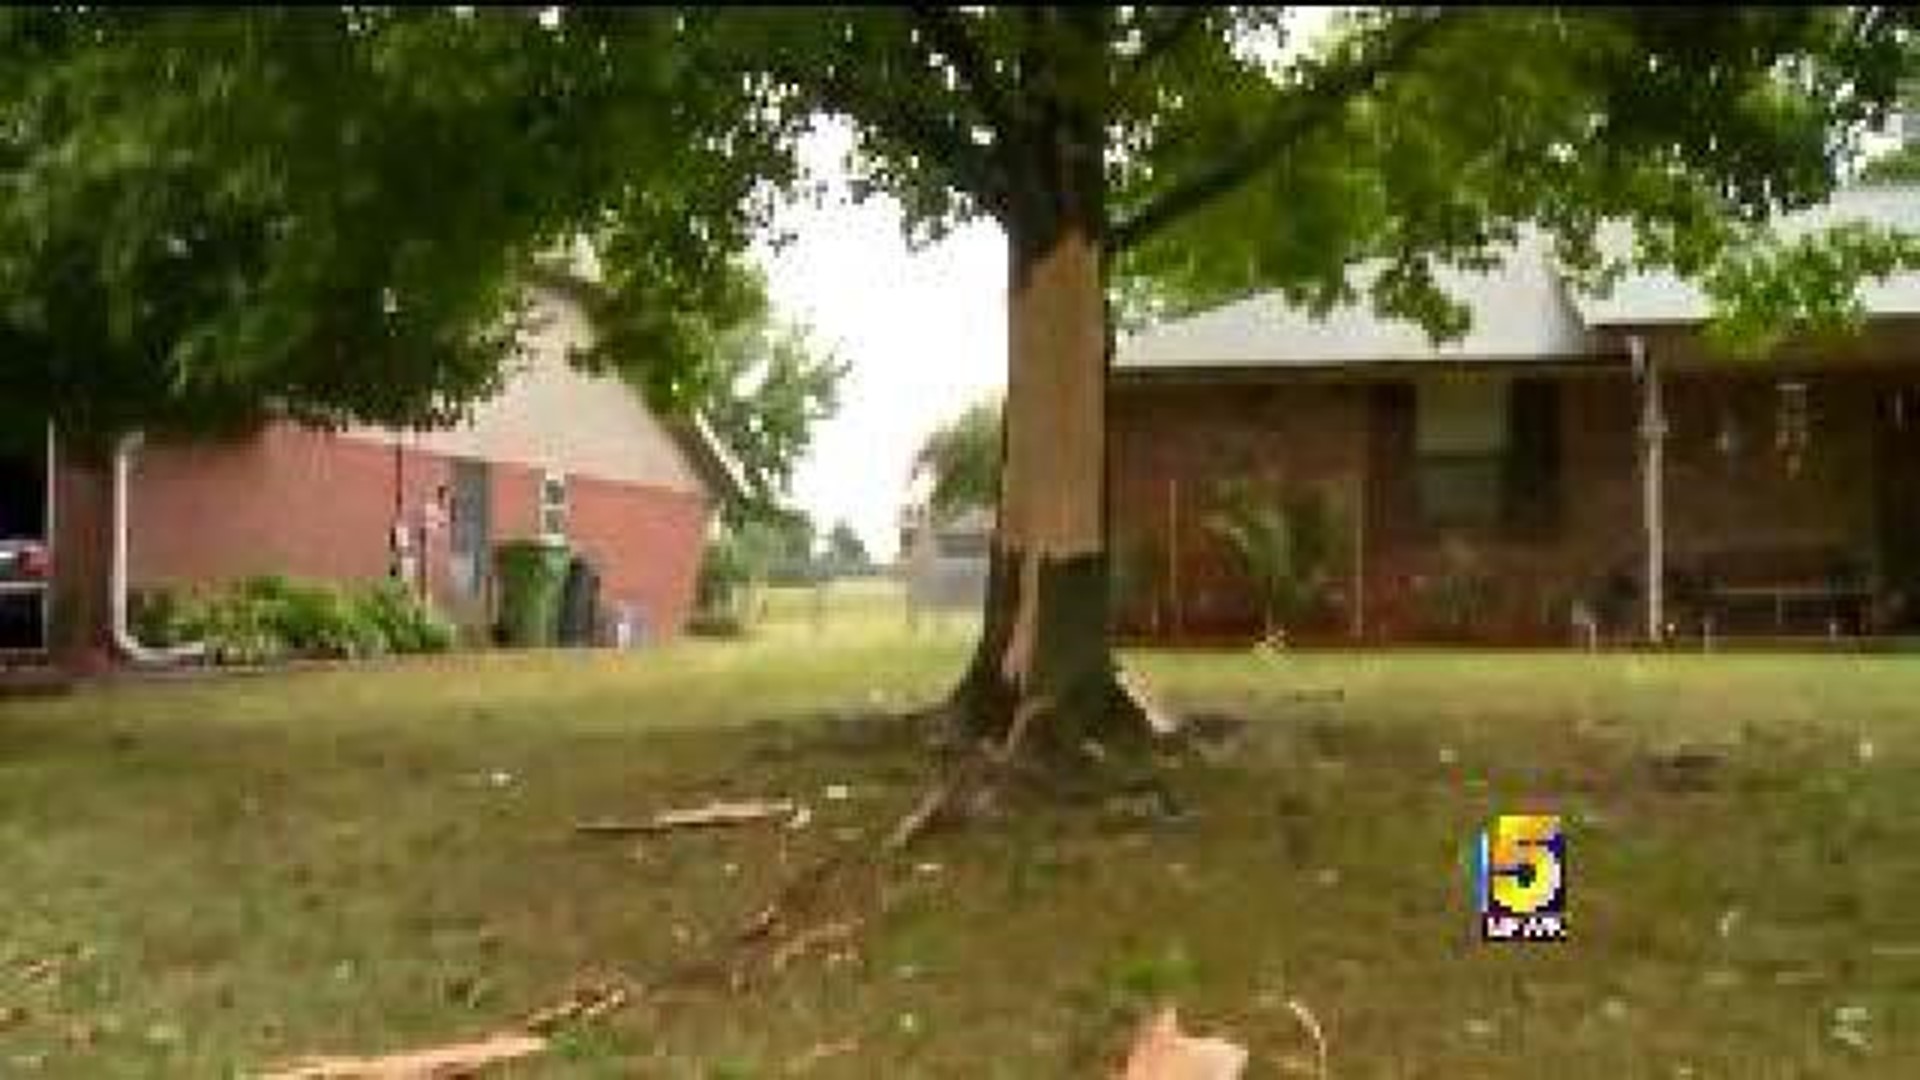 Neighbors Hear Explosion, See Tree Damage